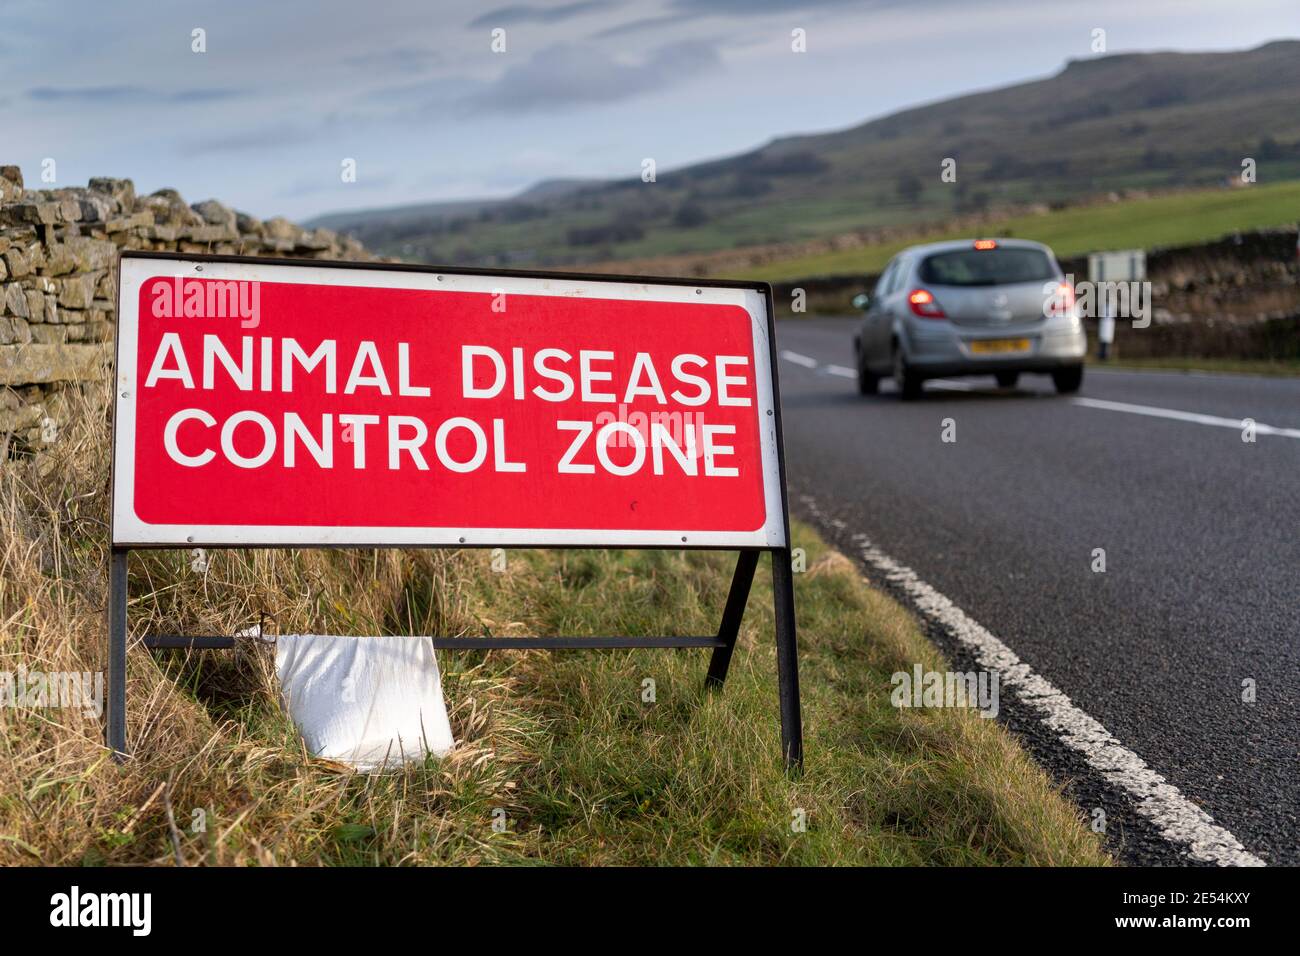 Cartello dell'area di controllo delle malattie animali a Wensleydale, parte dell'epidemia di influenza aviaria alla fine del 2020, Regno Unito. Foto Stock